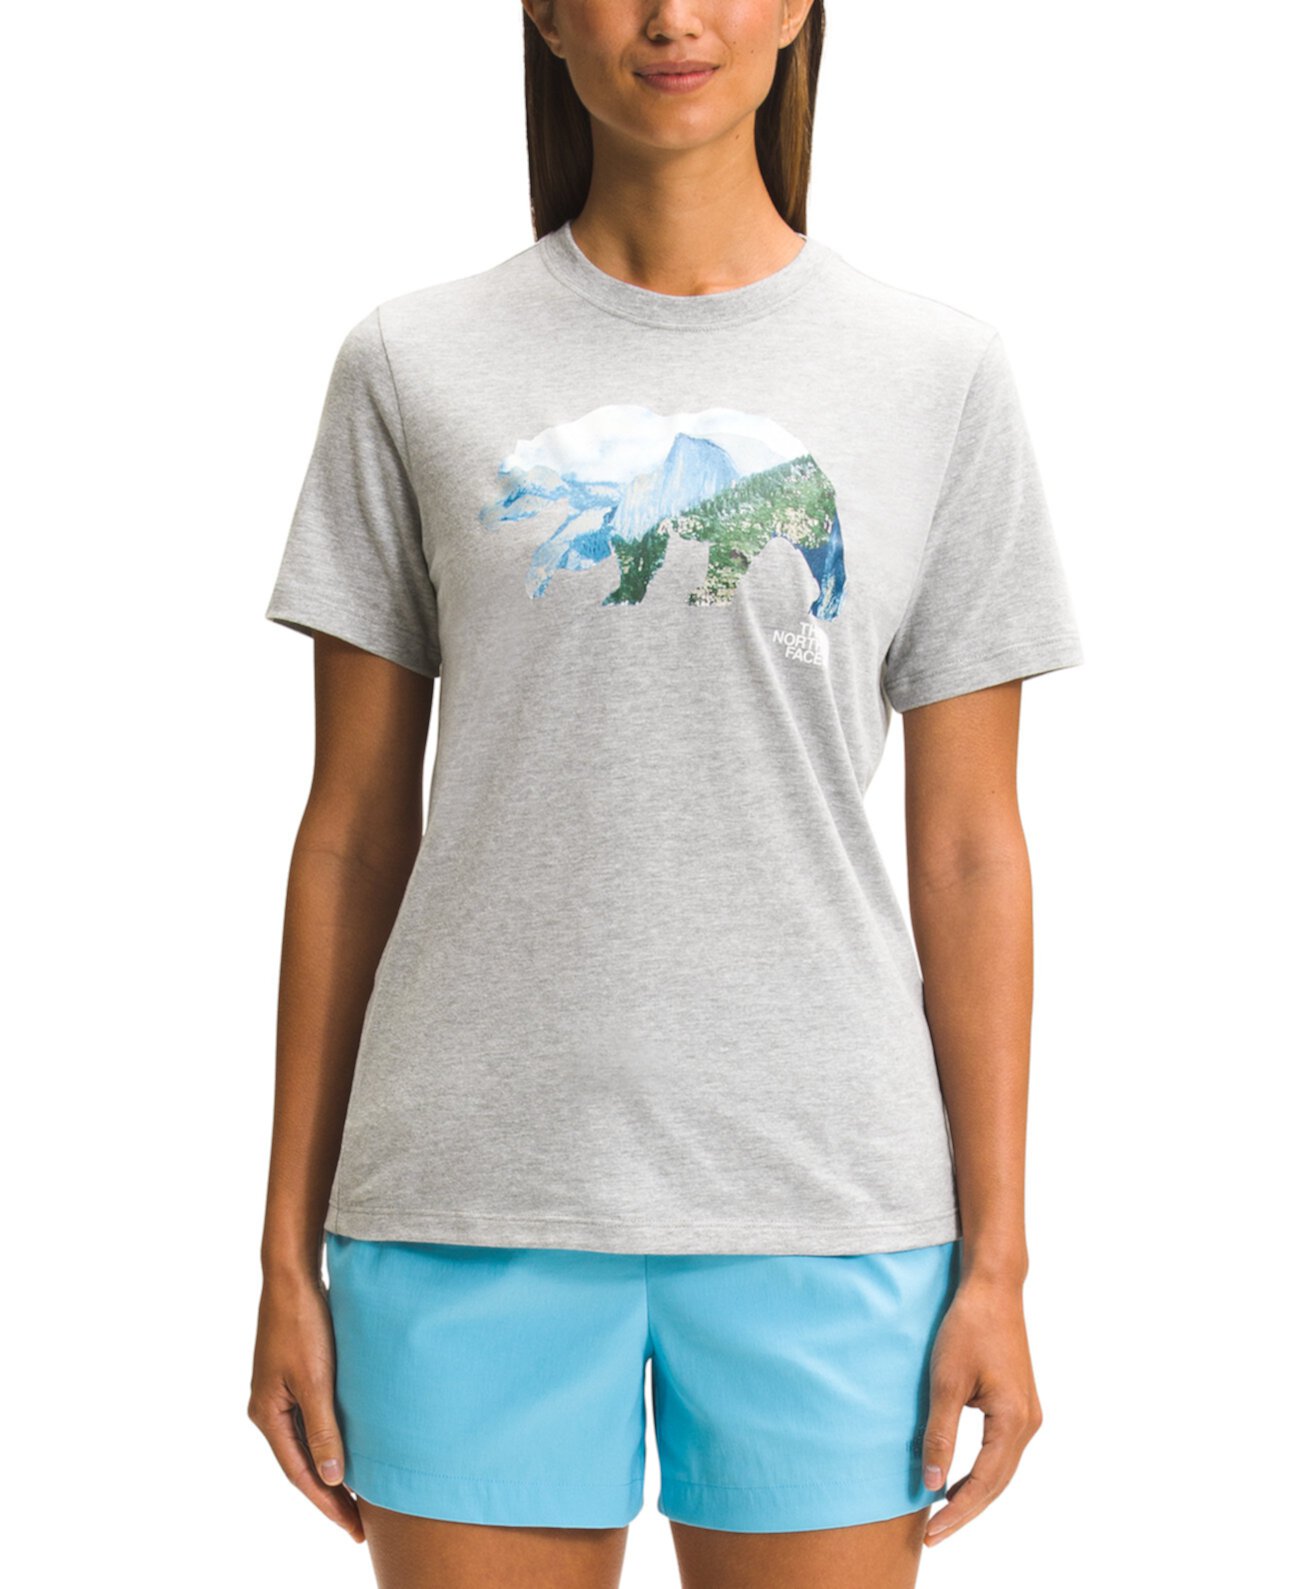 Женская хлопковая футболка с рисунком медведя The North Face